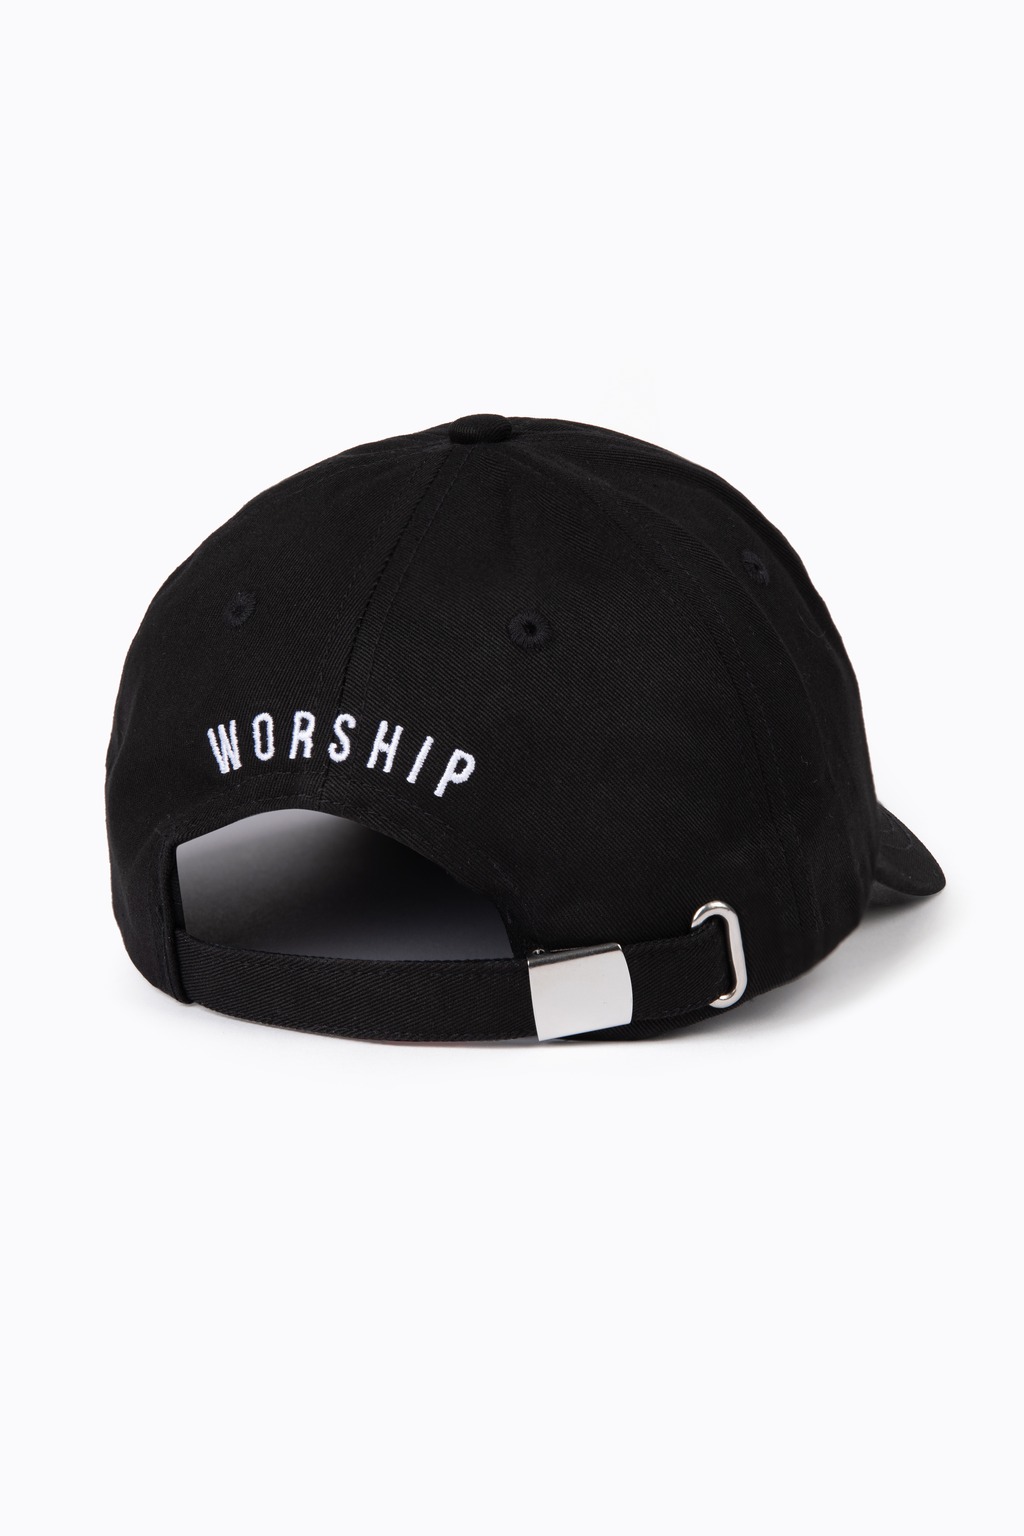 worshipcap23